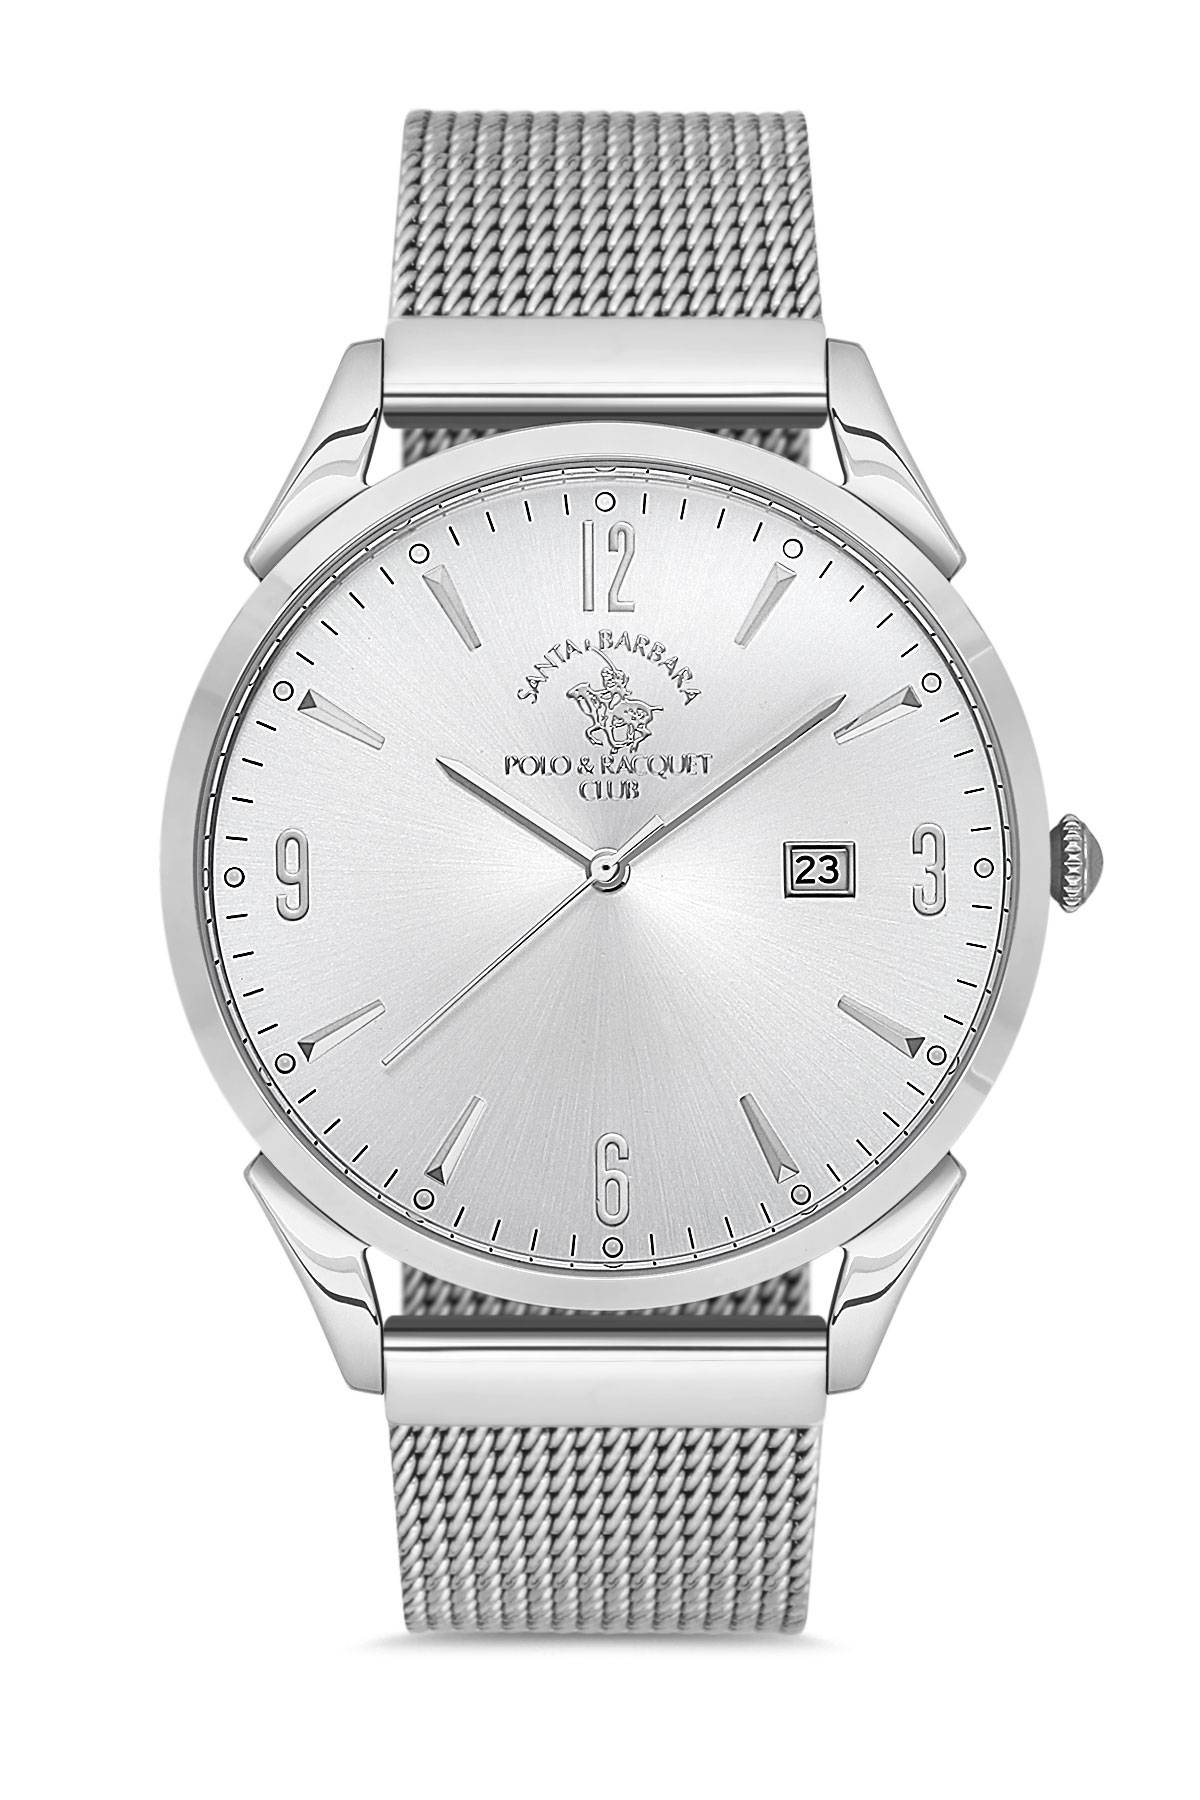 Наручные часы мужские Santa Barbara Polo & Racquet Club SB.1.10167-5 серебристые